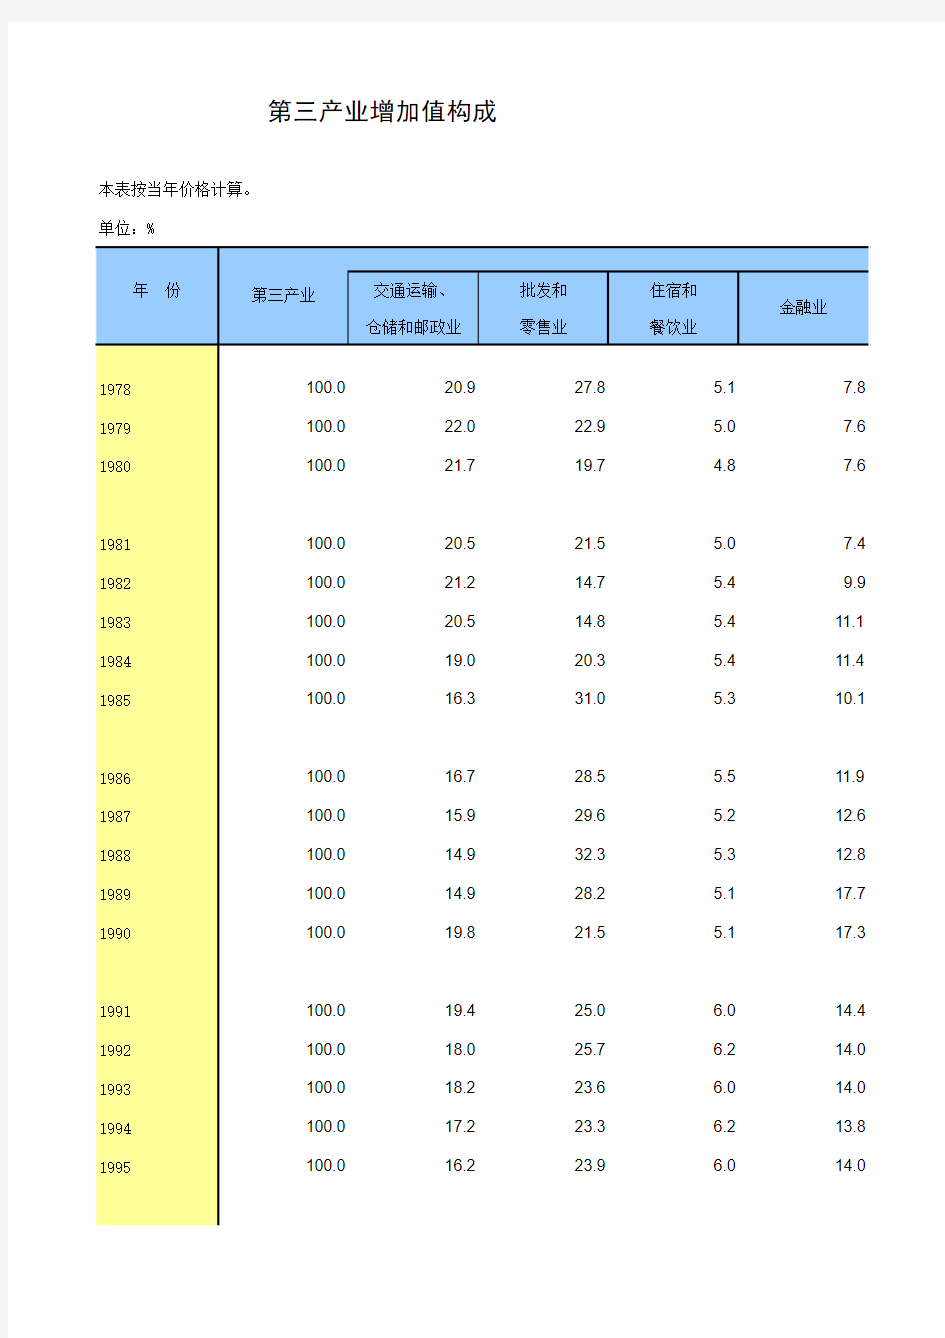 中国统计年鉴2013第三产业增加值构成